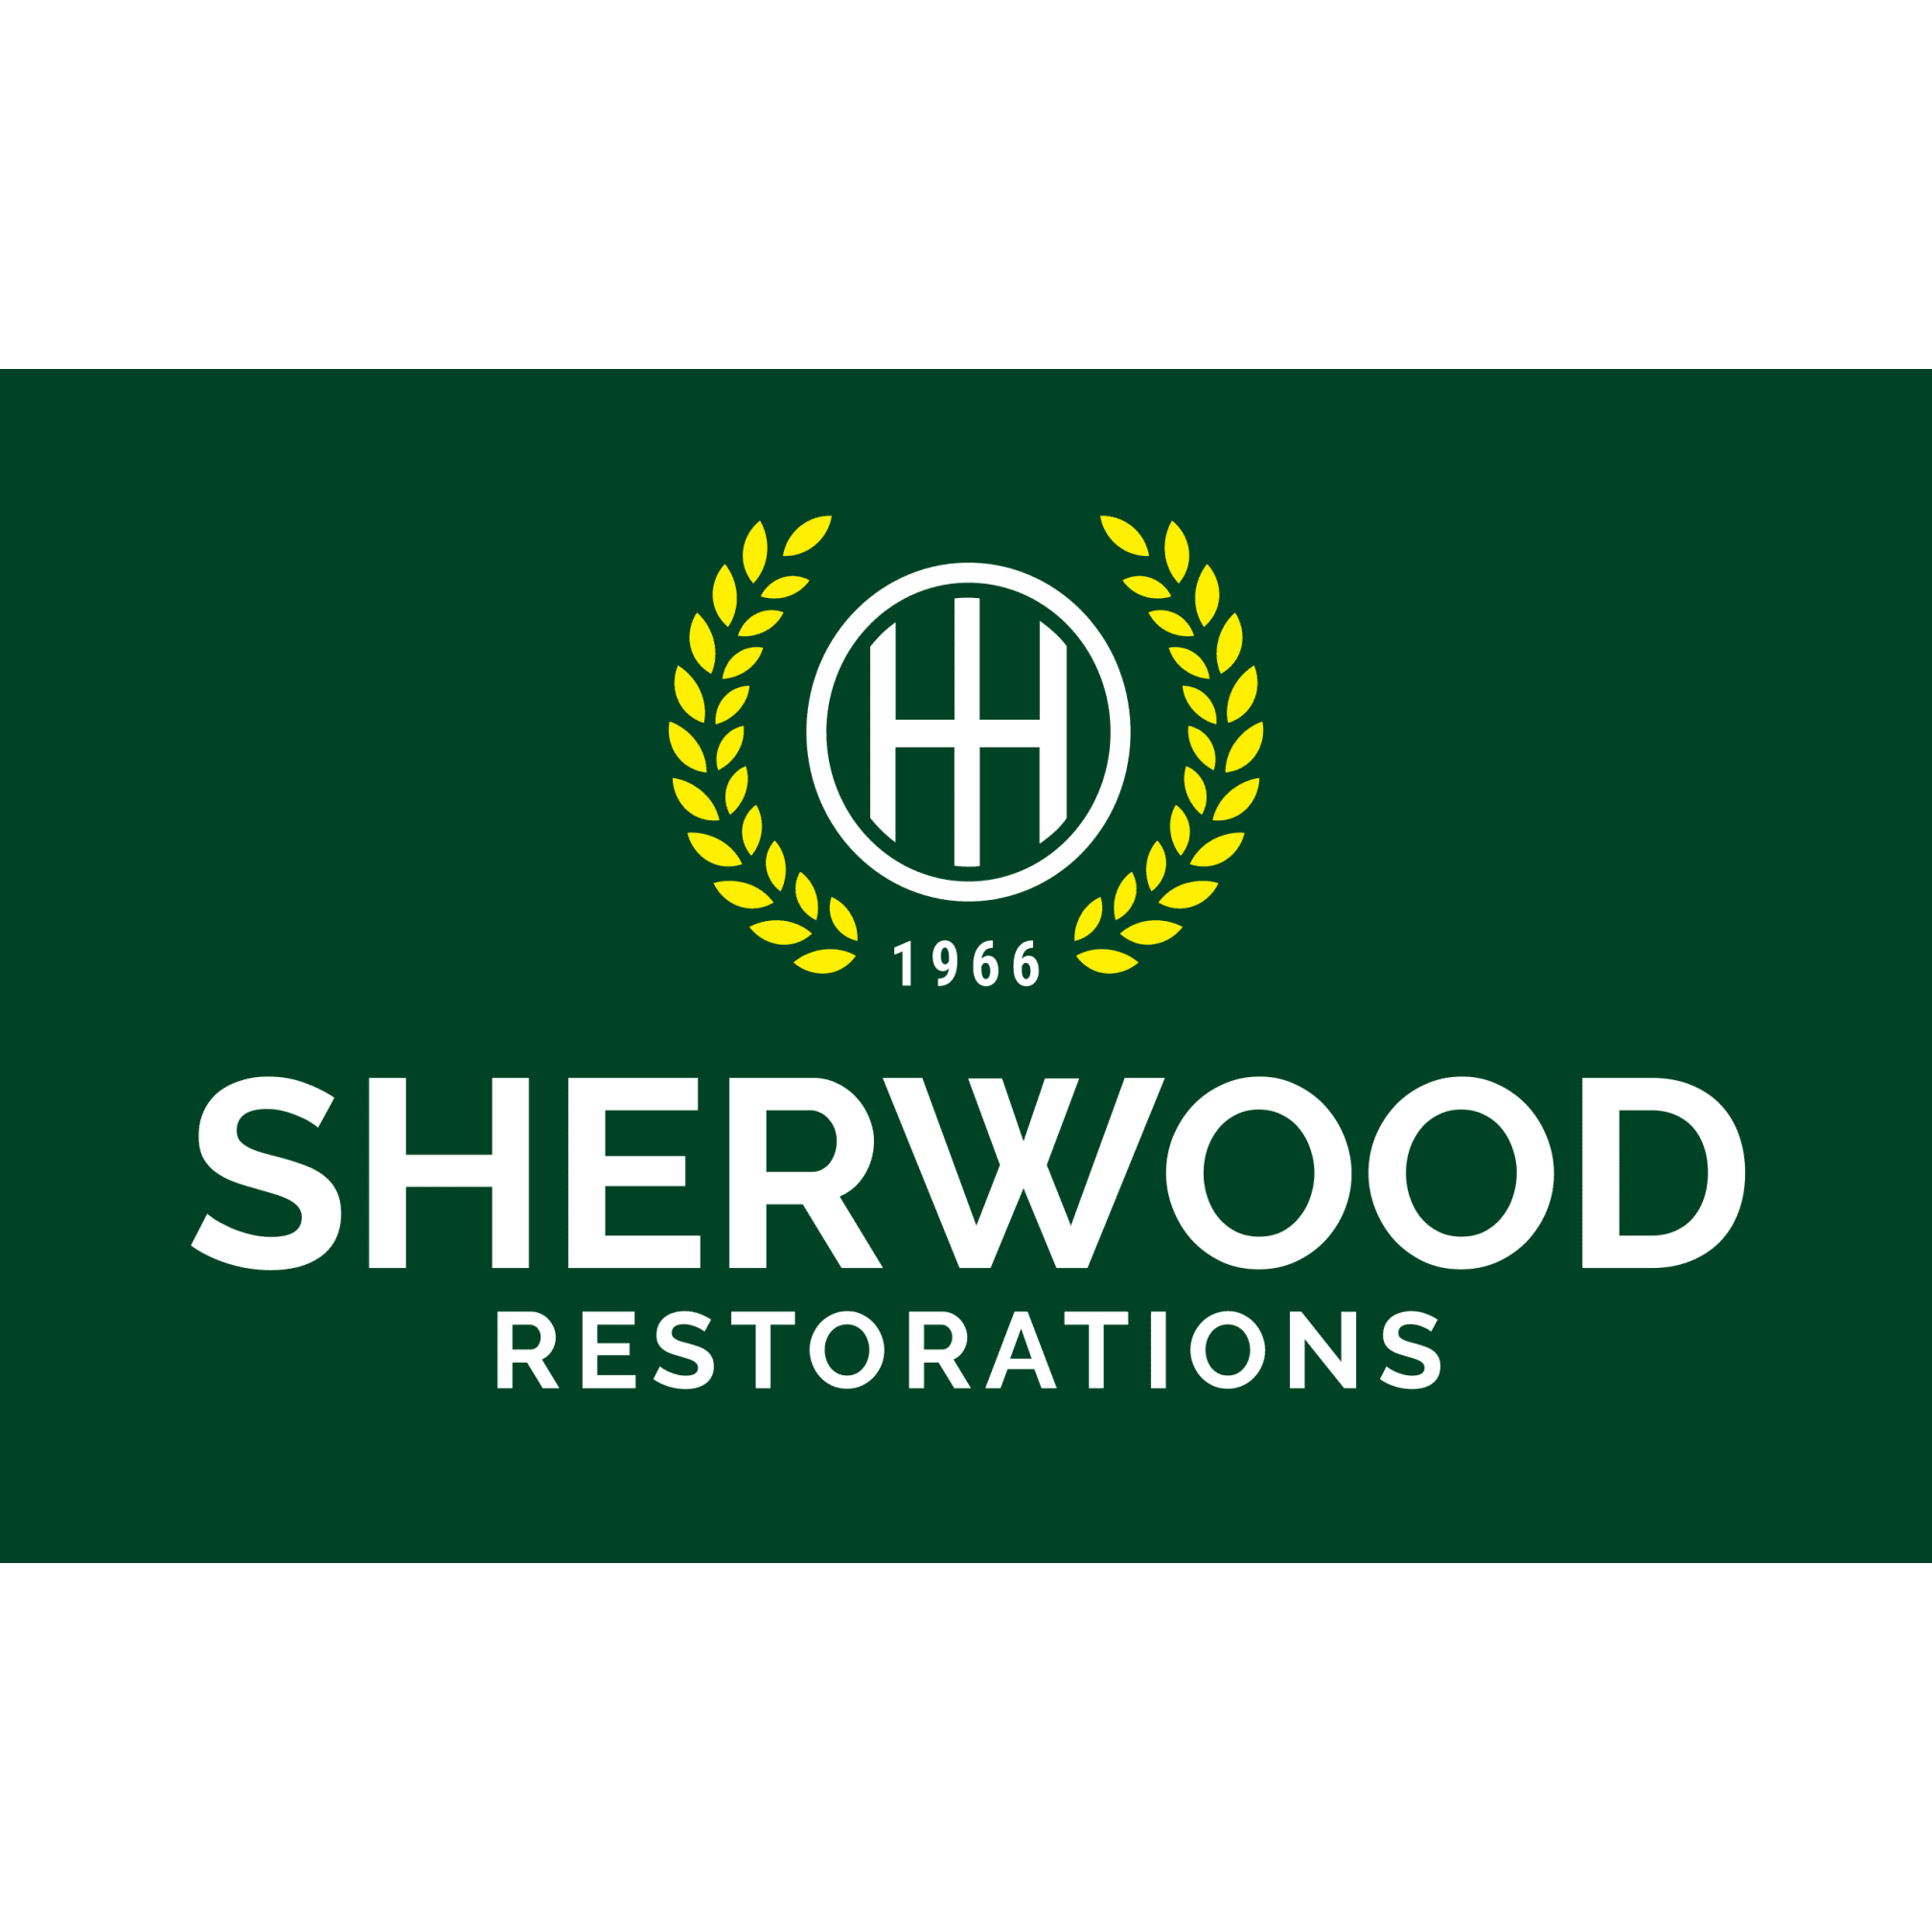 Sherwood Restorations - Southwell, Nottinghamshire NG25 0QB - 01636 812655 | ShowMeLocal.com